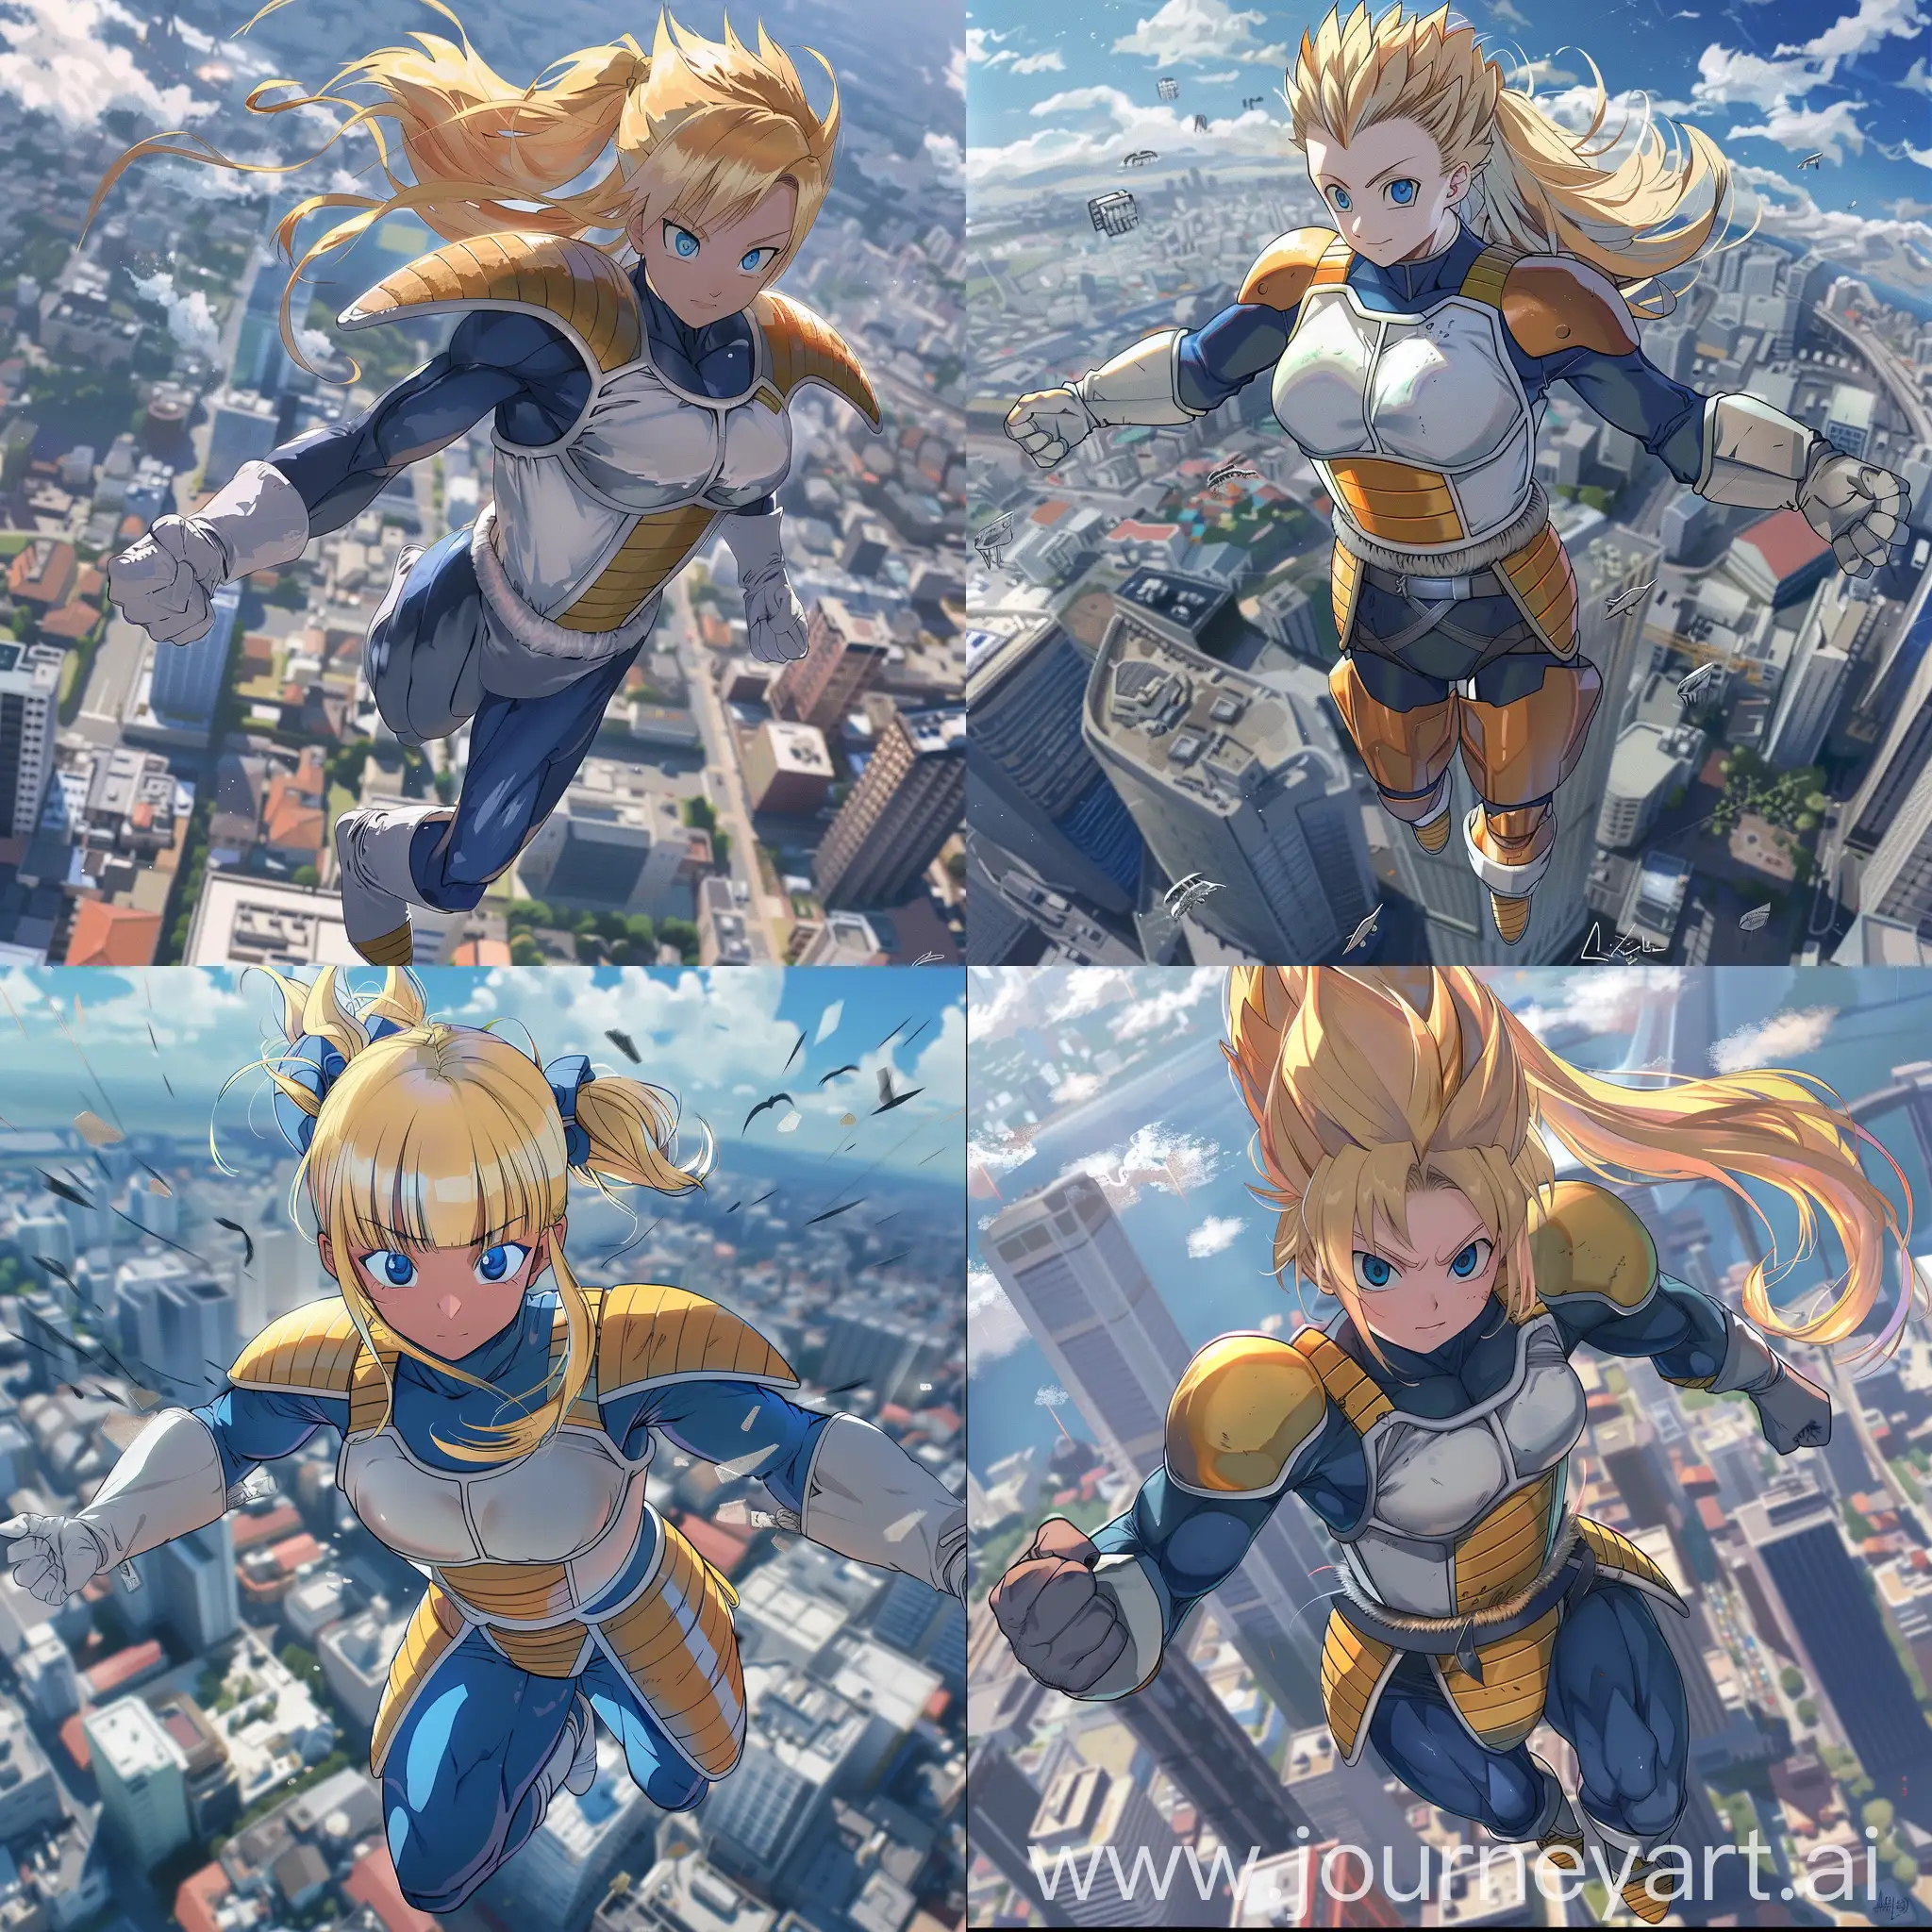 anime girl in vegeta armor, full body shot, blue eyes, blonde, beautiful, gorgeous, hot, flying over city, ponytail